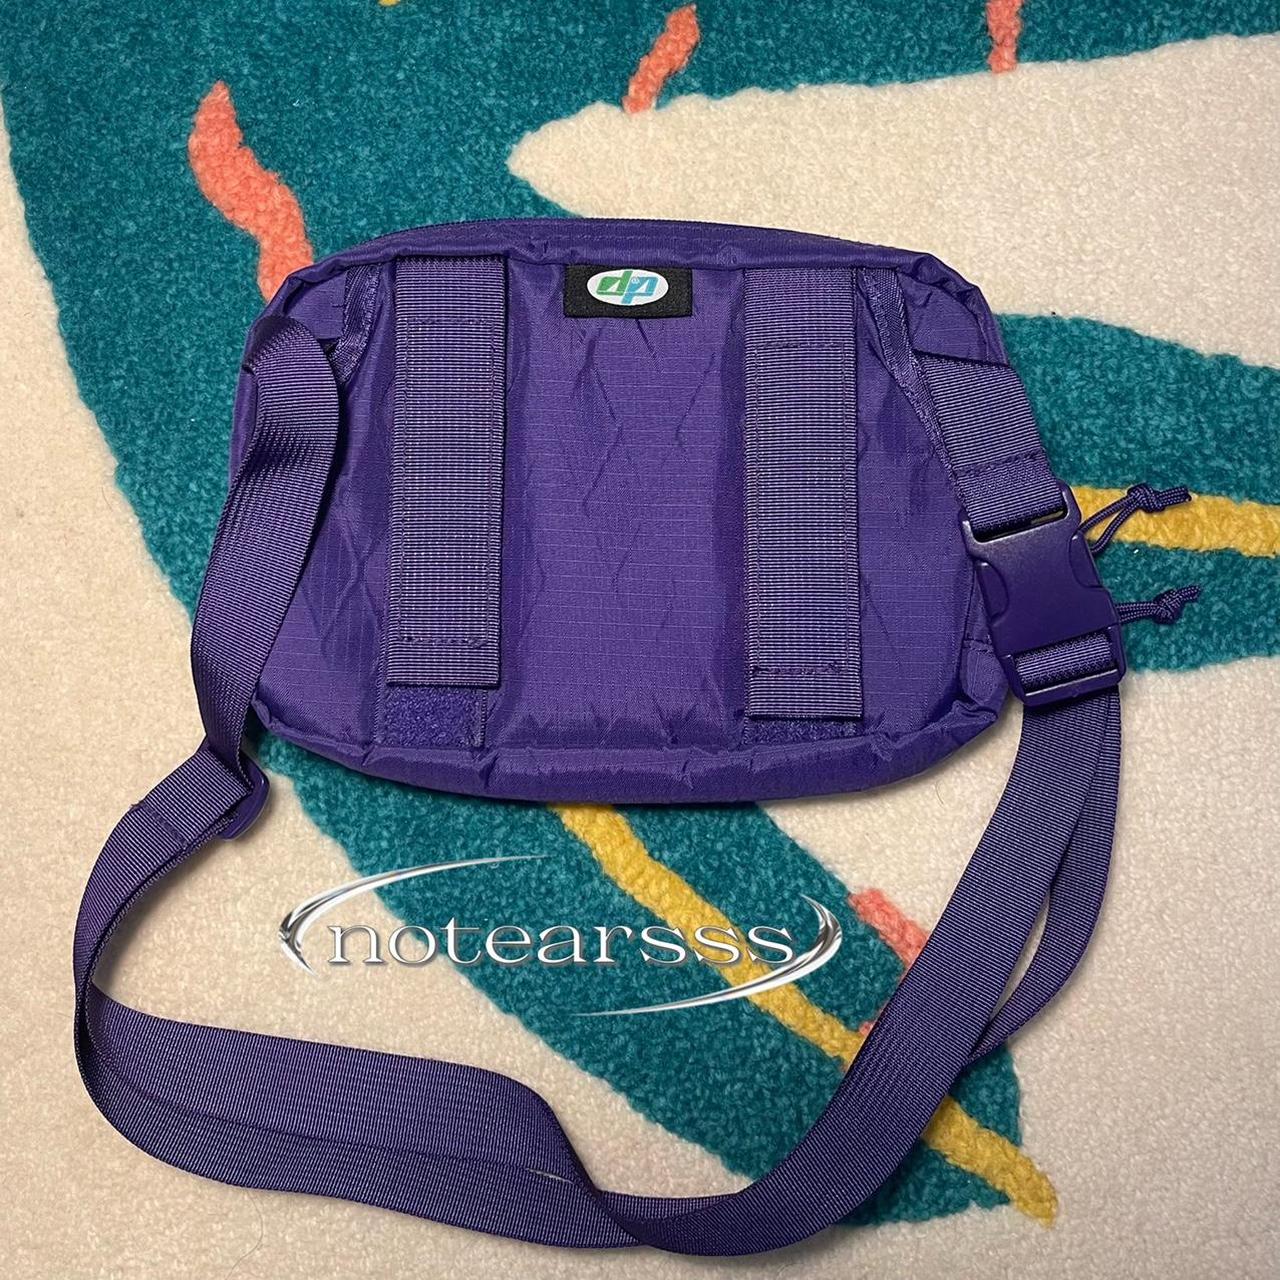 SUPREME FW18 Shoulder Bag (Purple) VNDS (Very Near - Depop